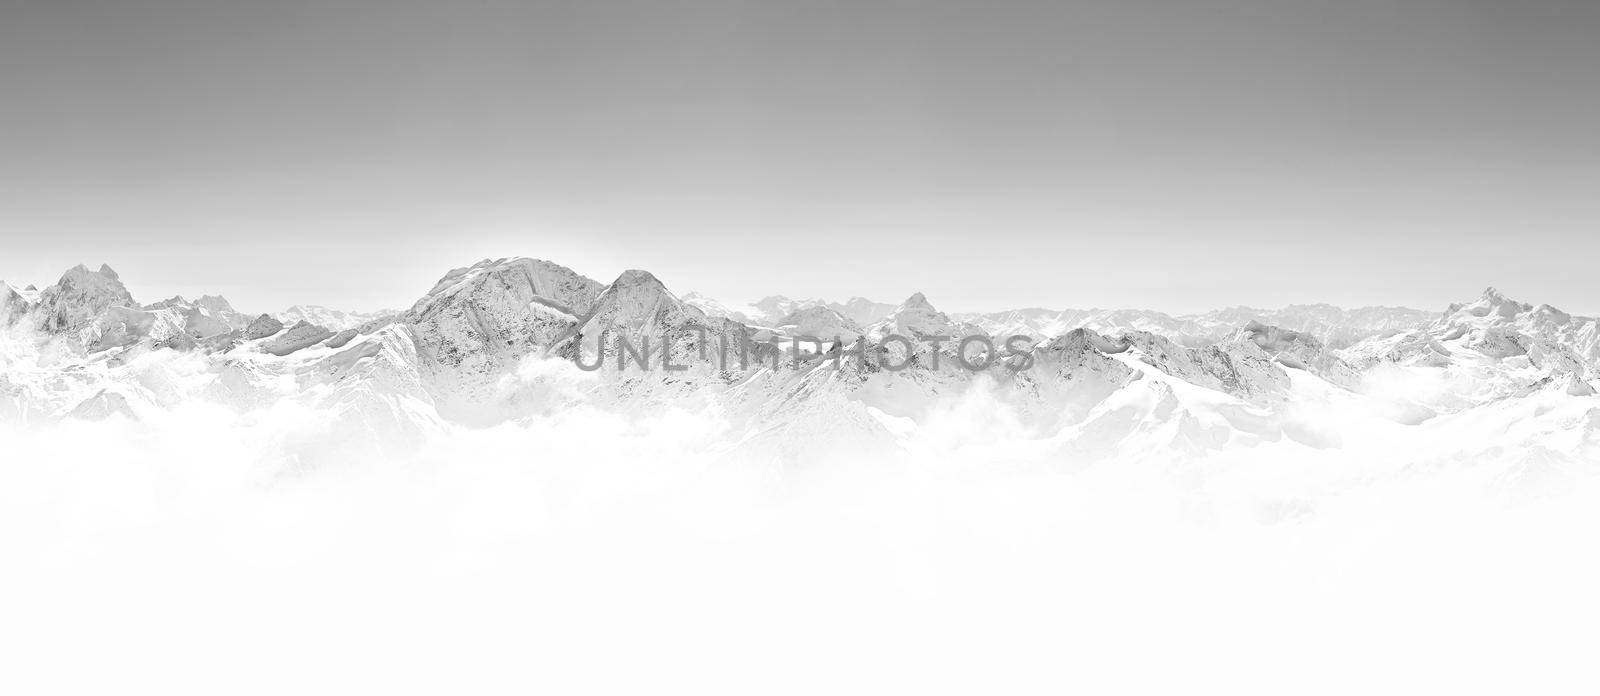 Panorama of winter mountains in Caucasus region,Elbrus mountain, Russia